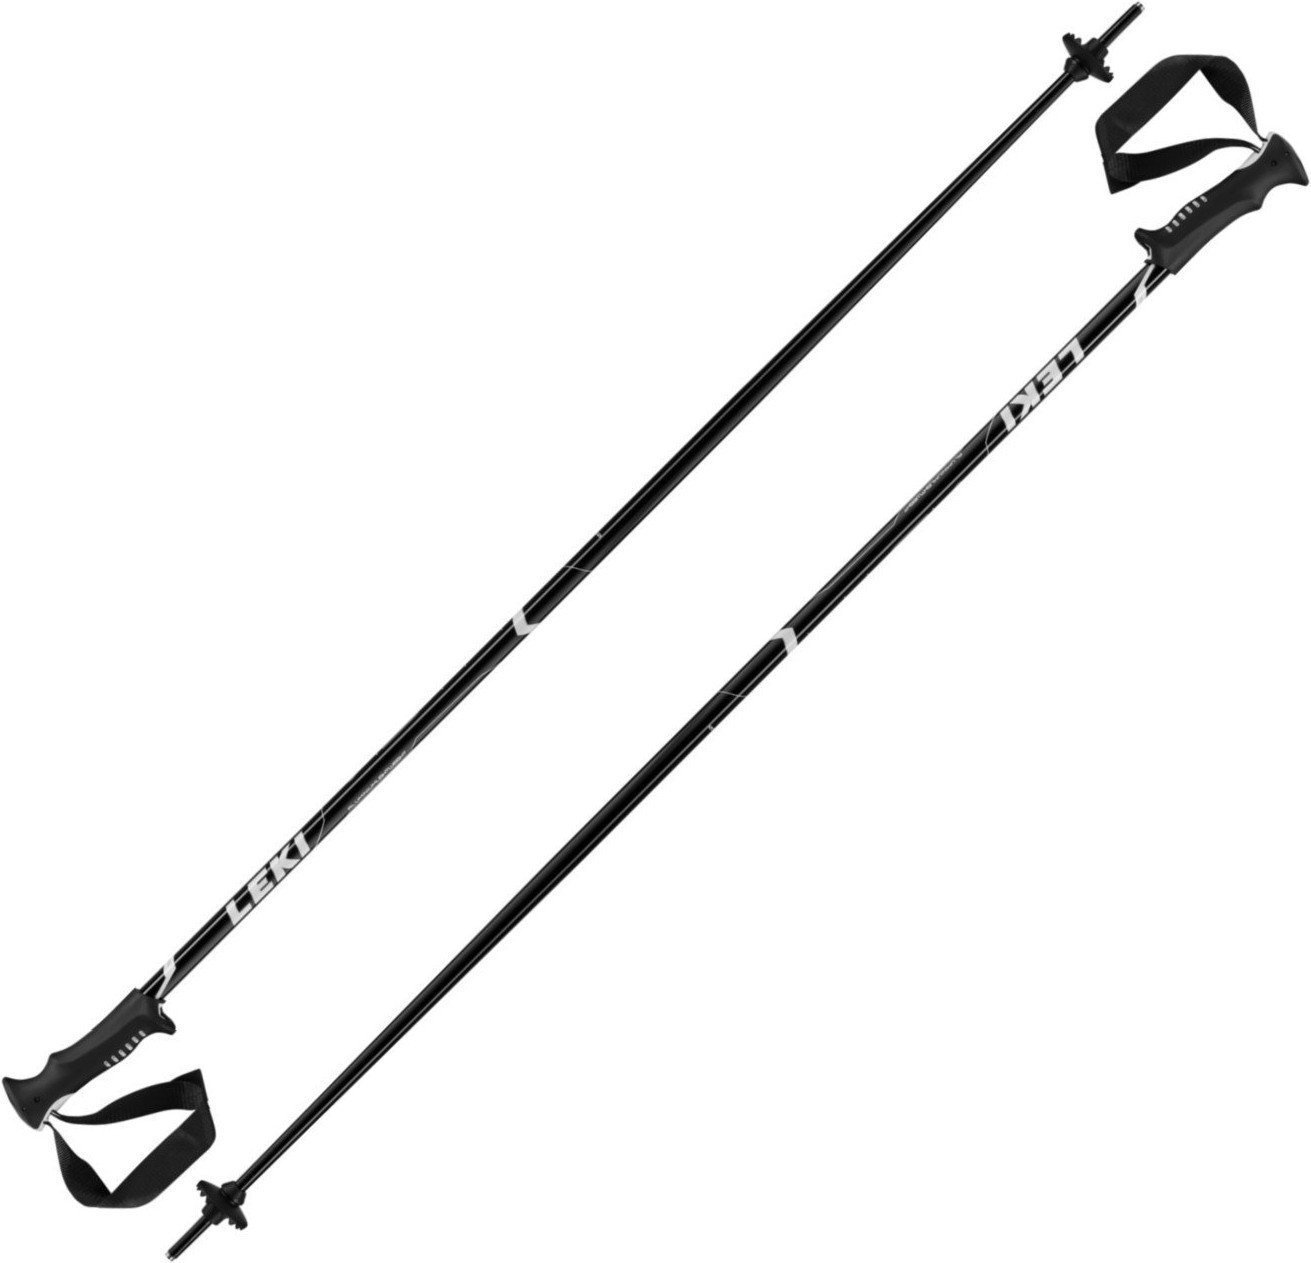 Ski Poles Leki Vista Black/White-Silver 115 18/19